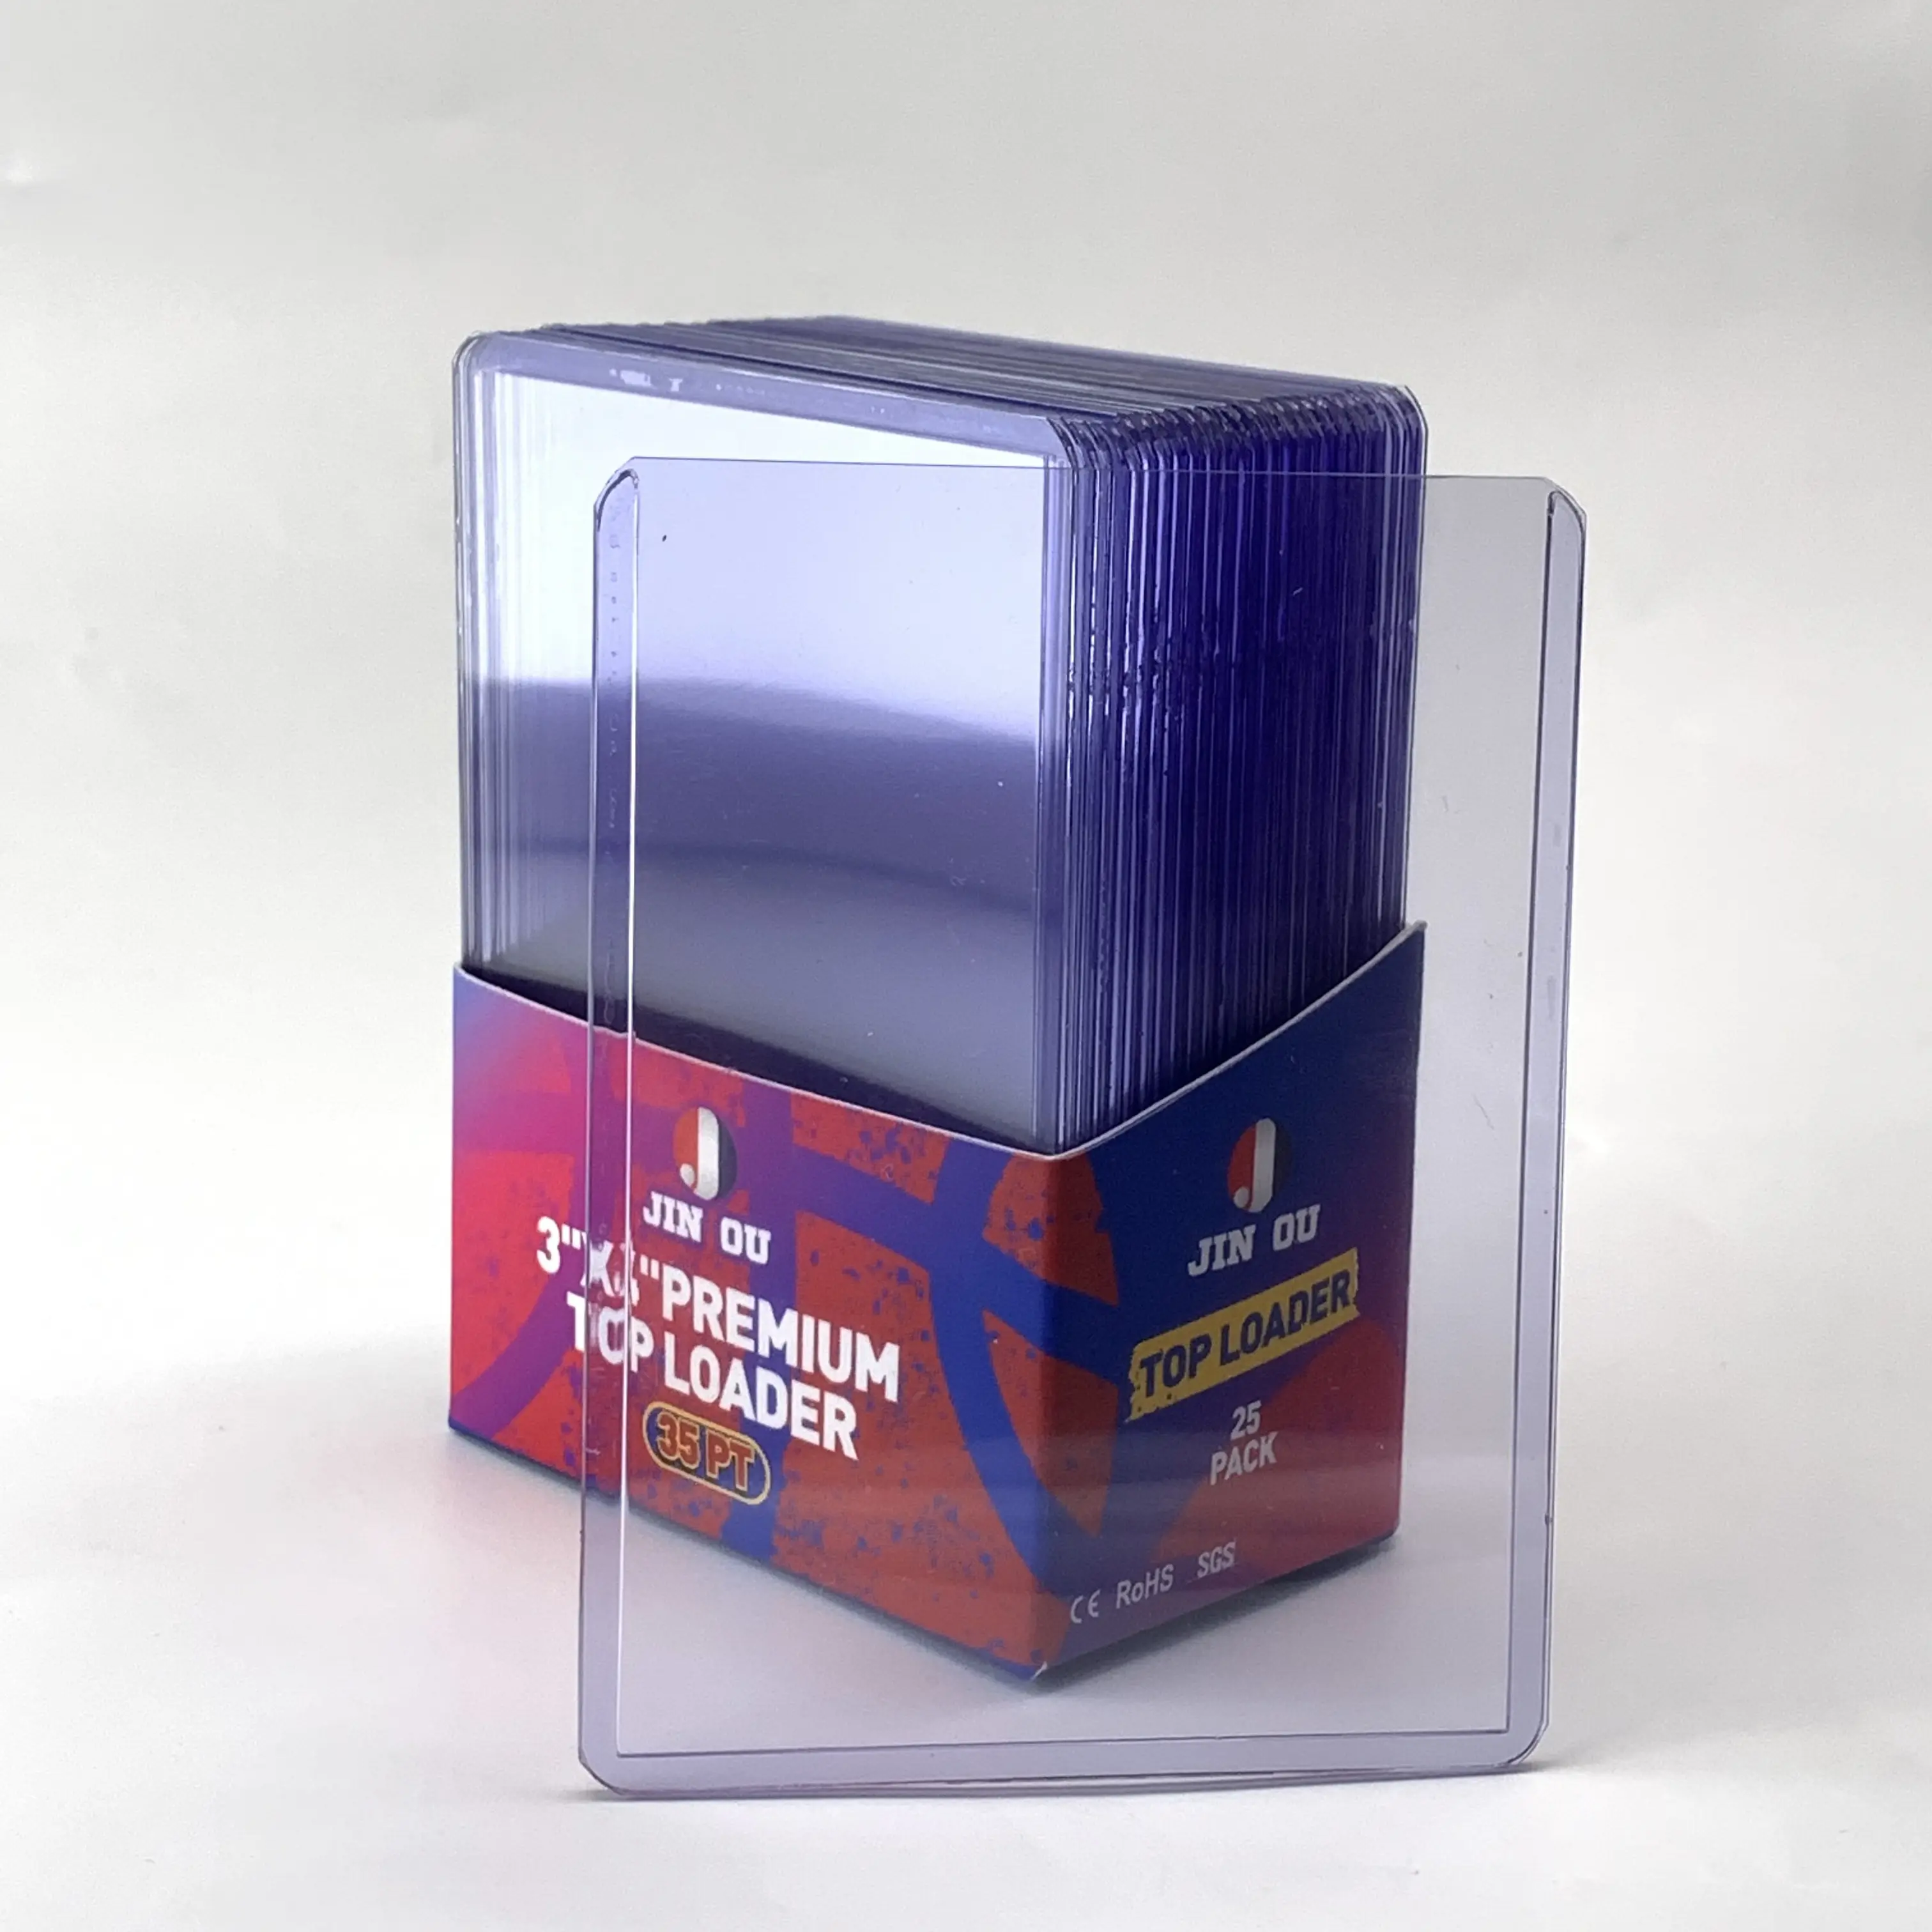 Plastik tahsil kart tutucu 3x4 ticaret kartı üst yükleyici JO-K-066 kart tutucu